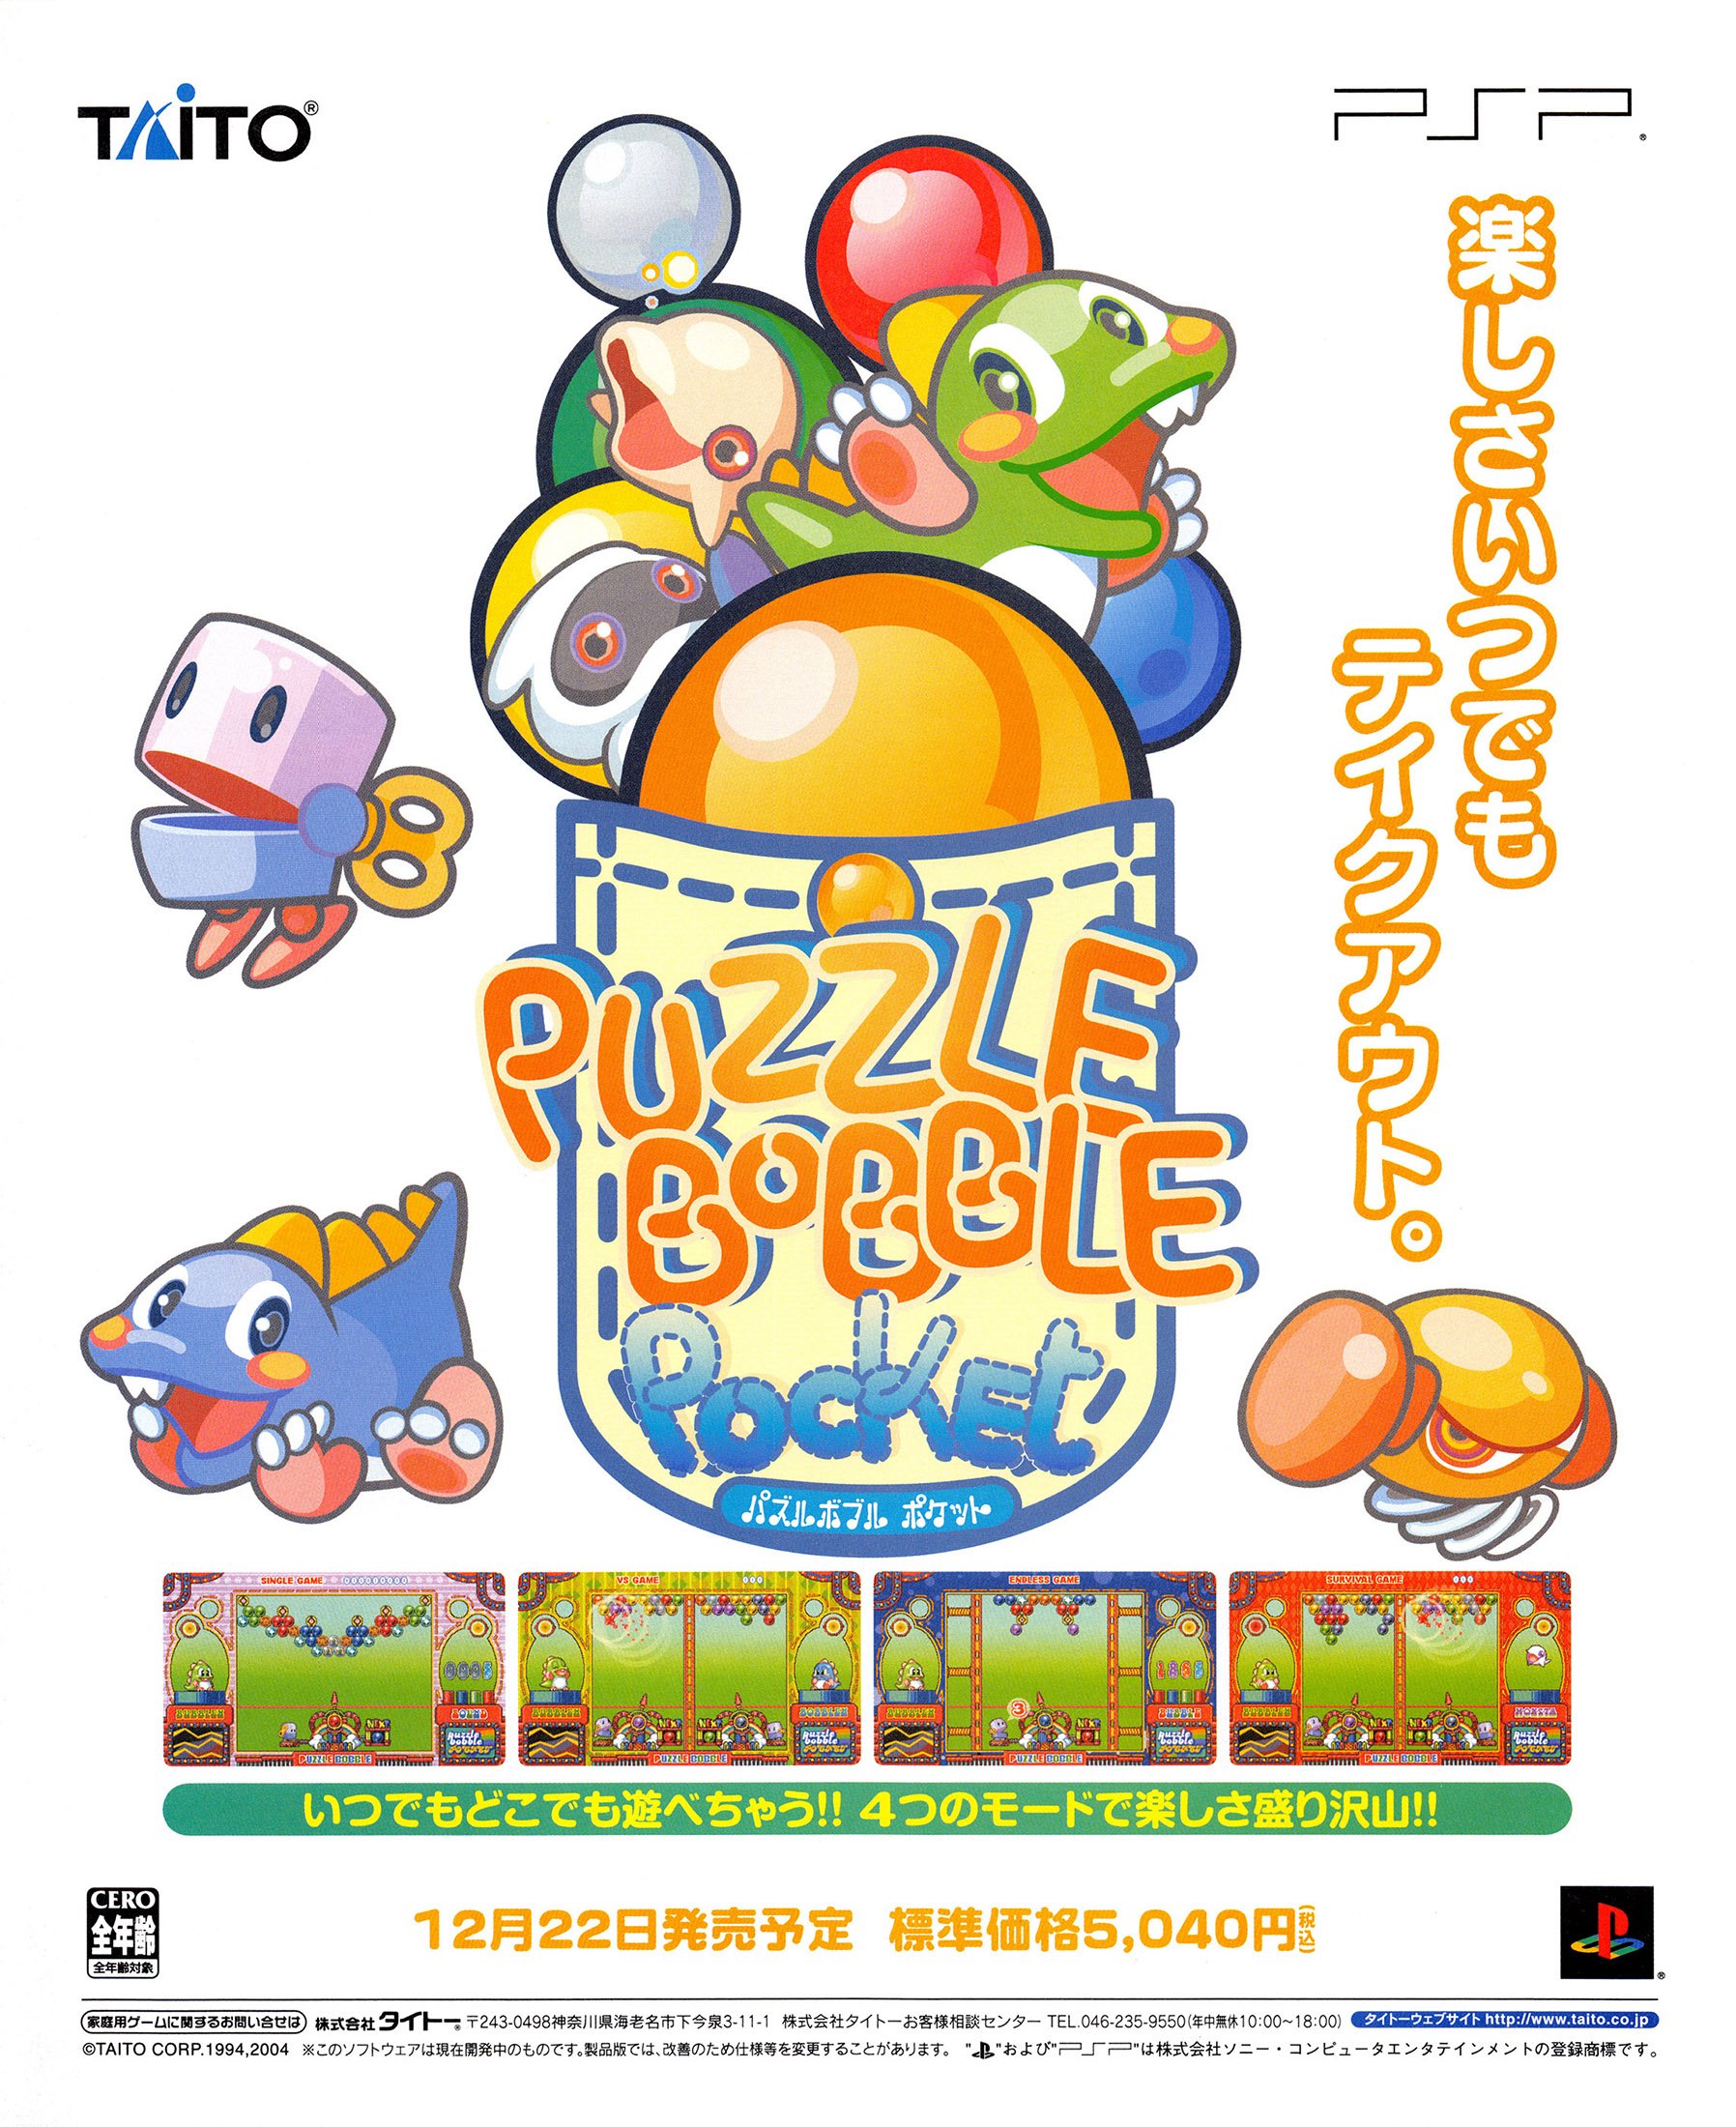 Puzzle Bobble Pocket (Japan)